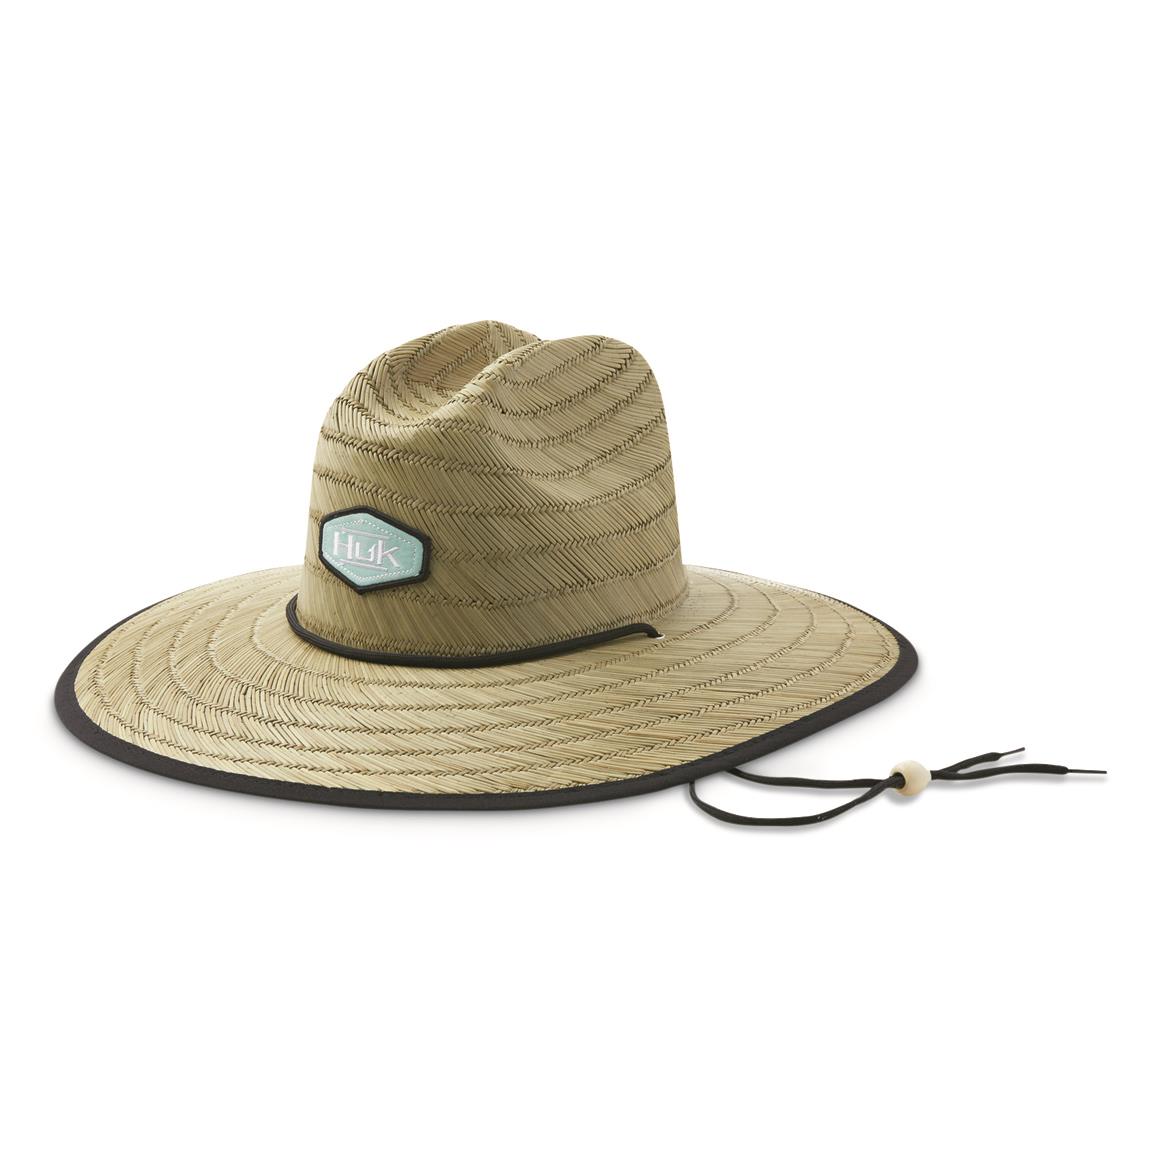 Huk Women's Running Lakes Straw Hat, Beach Glass